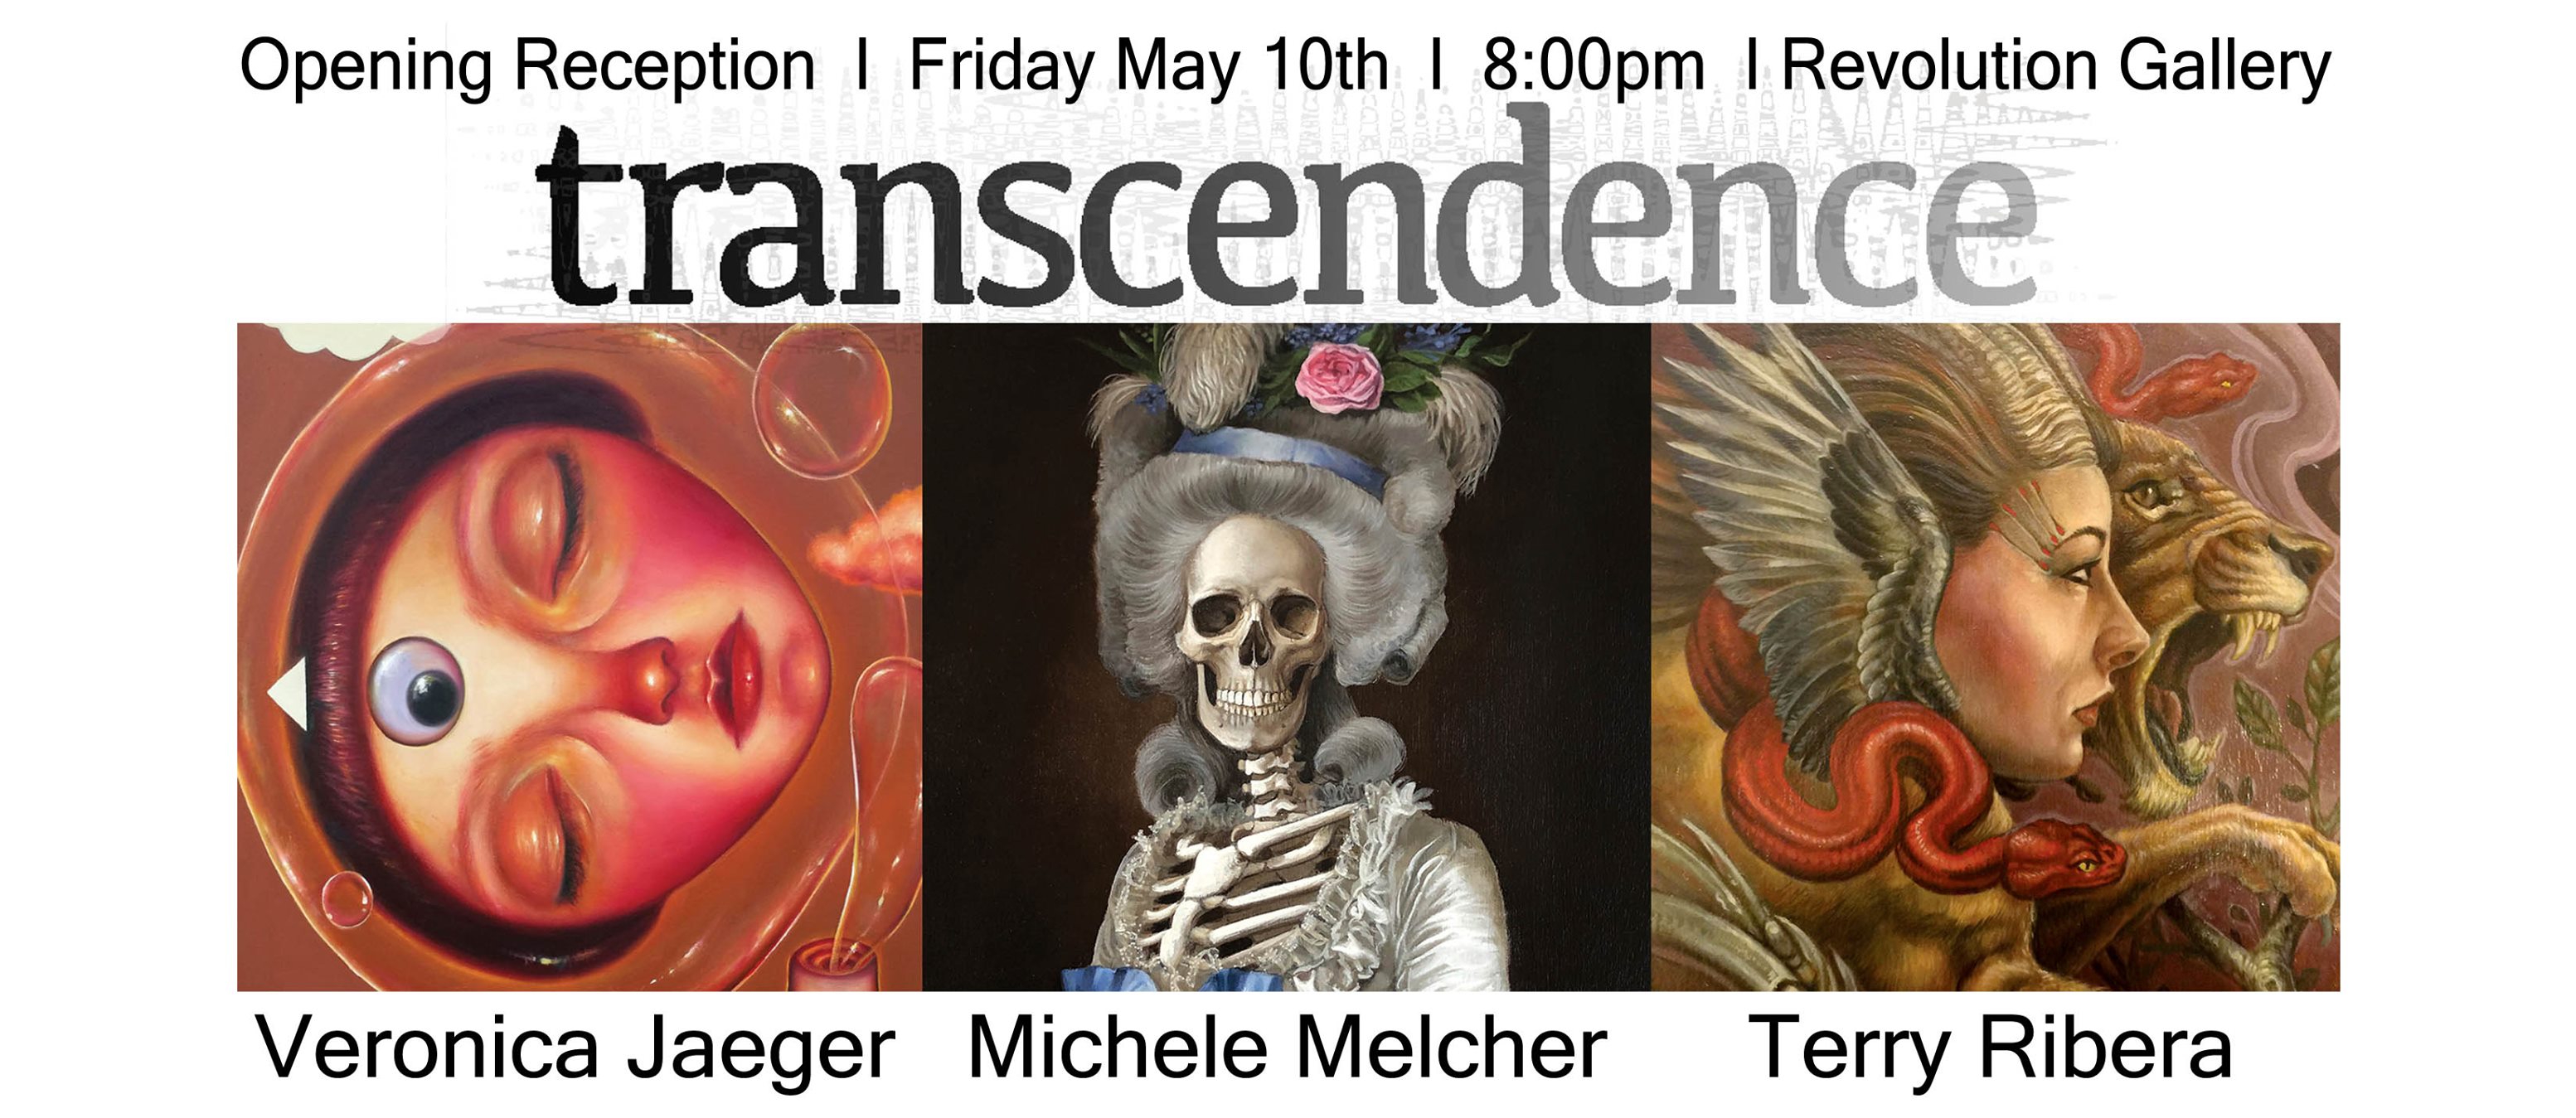 Transendence - Revolution Gallery